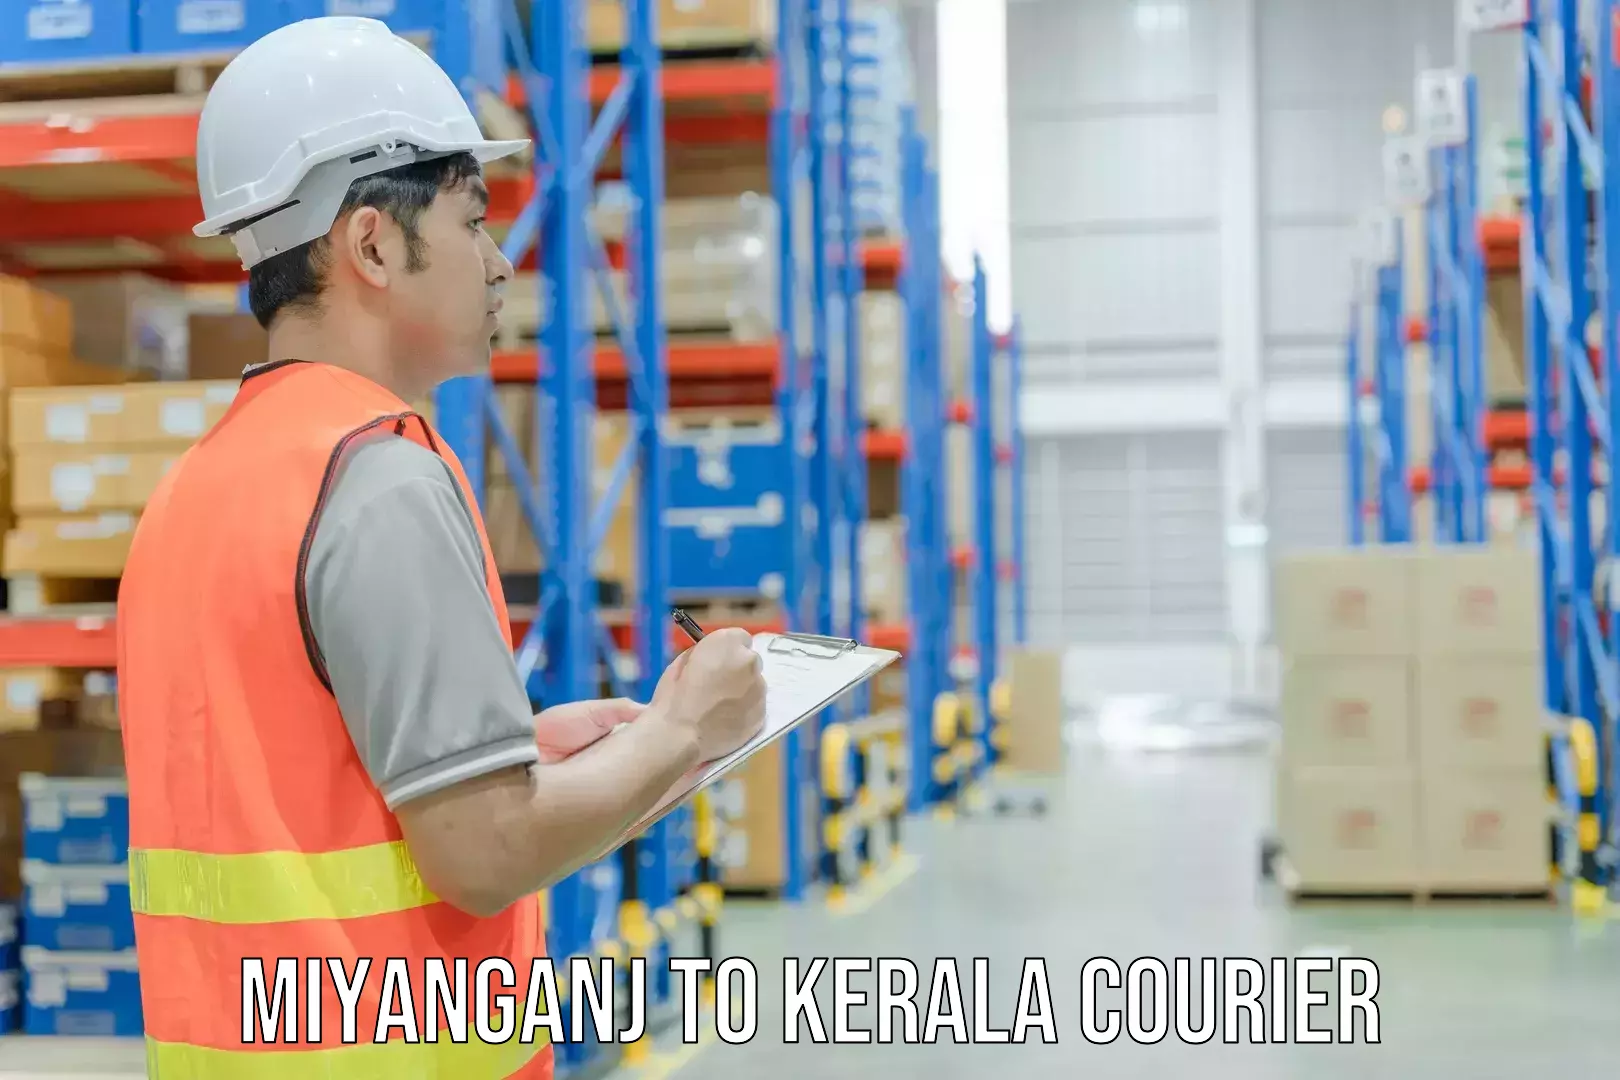 Versatile courier offerings Miyanganj to Kerala